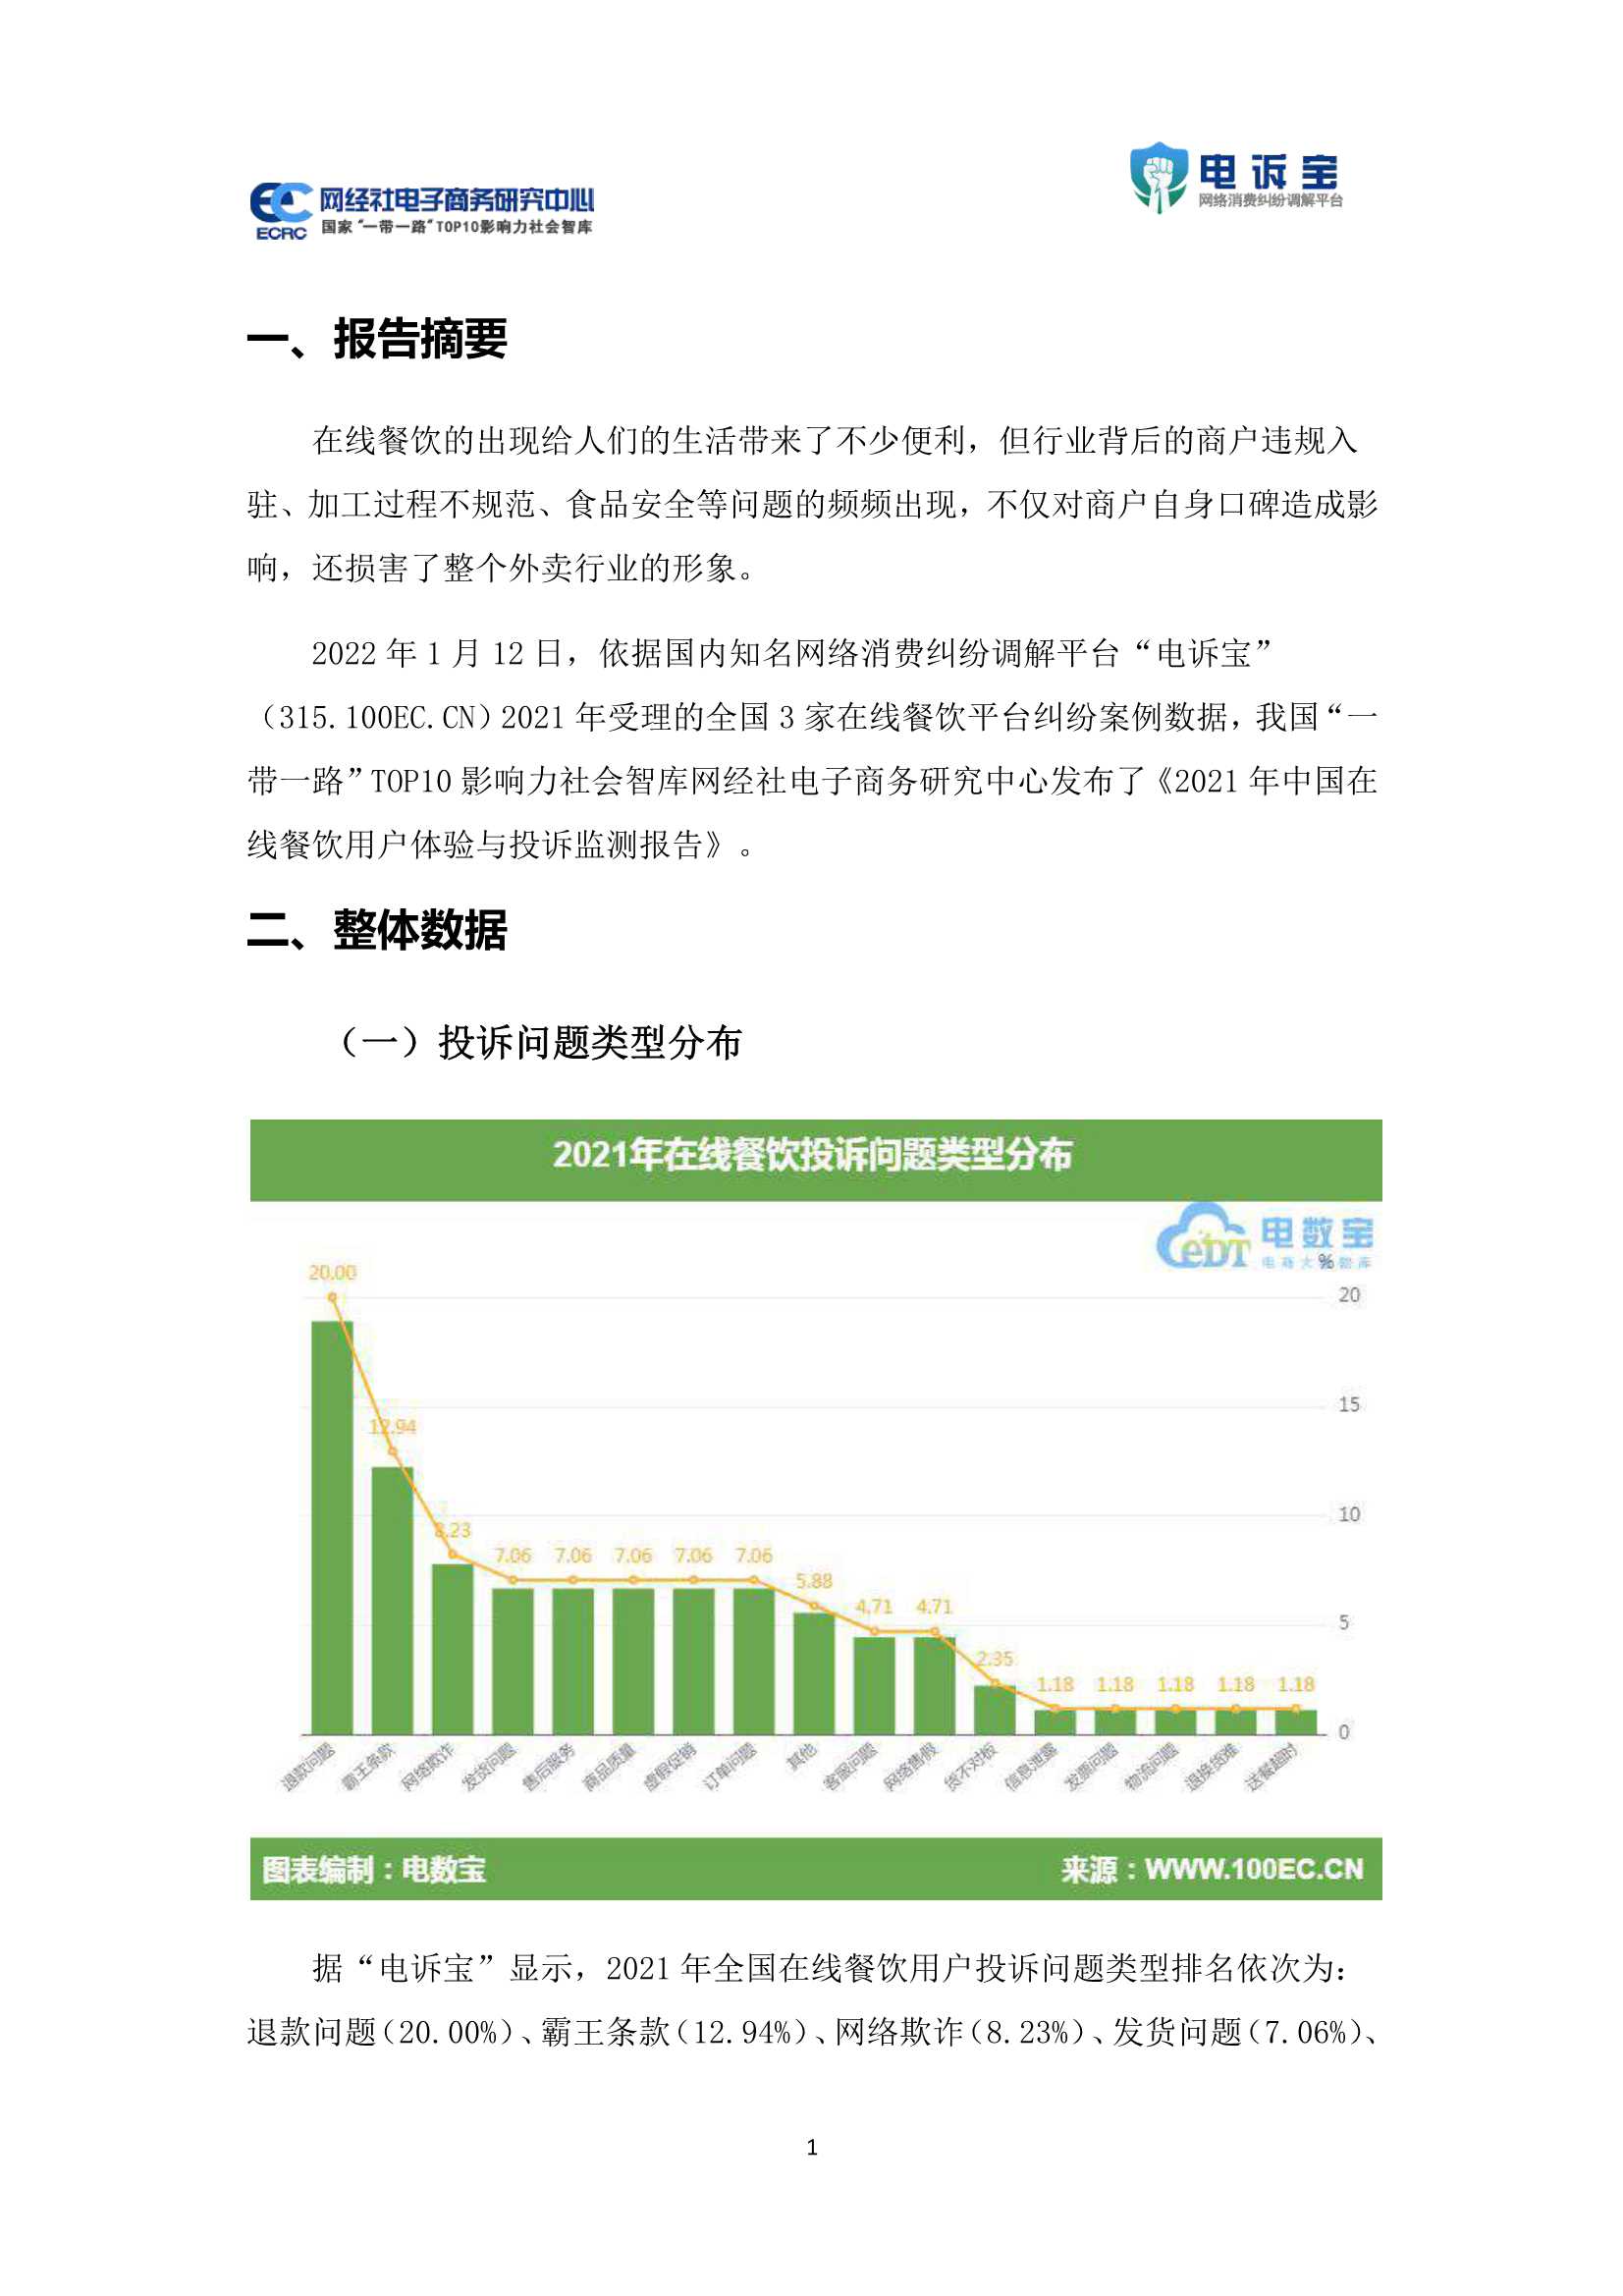 2021年中国在线餐饮用户体验与投诉监测报告-2022.01-20页